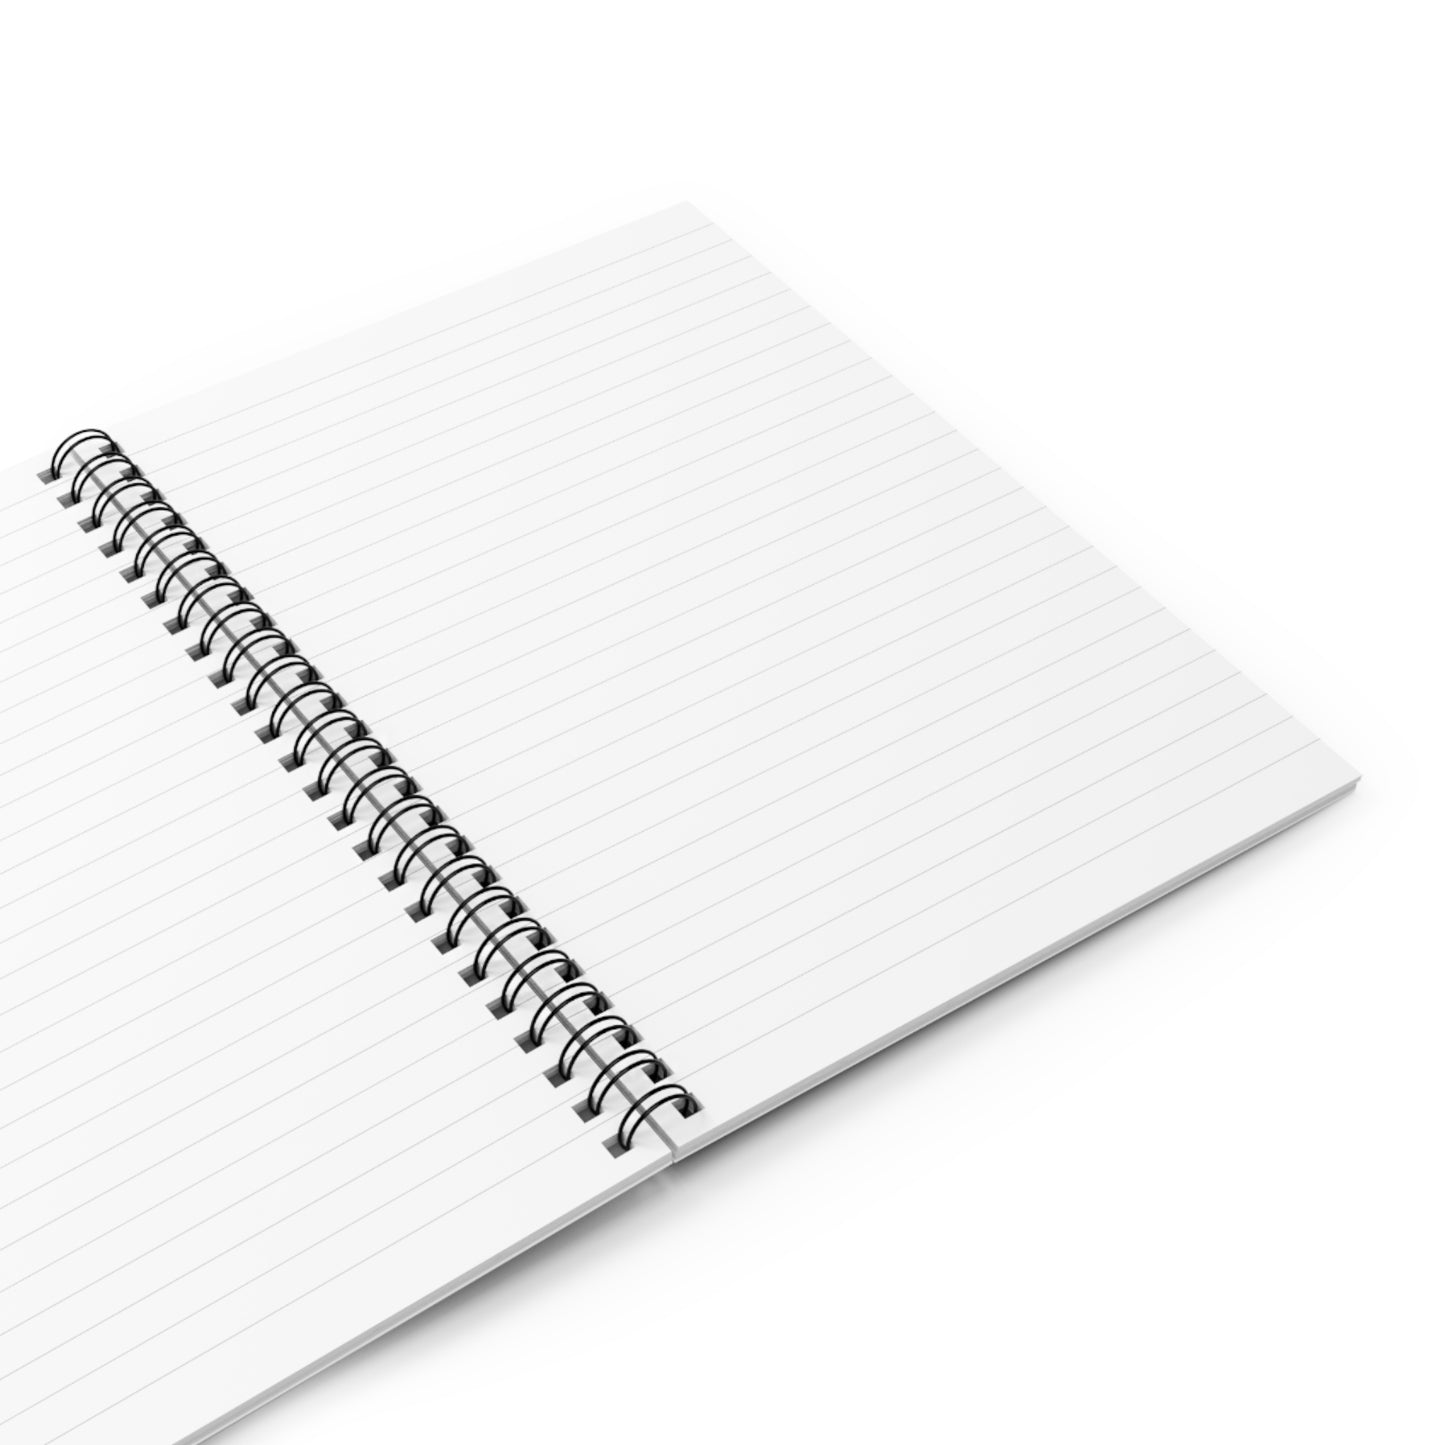 Dark Grey Spiral Notebook - Ruled Line